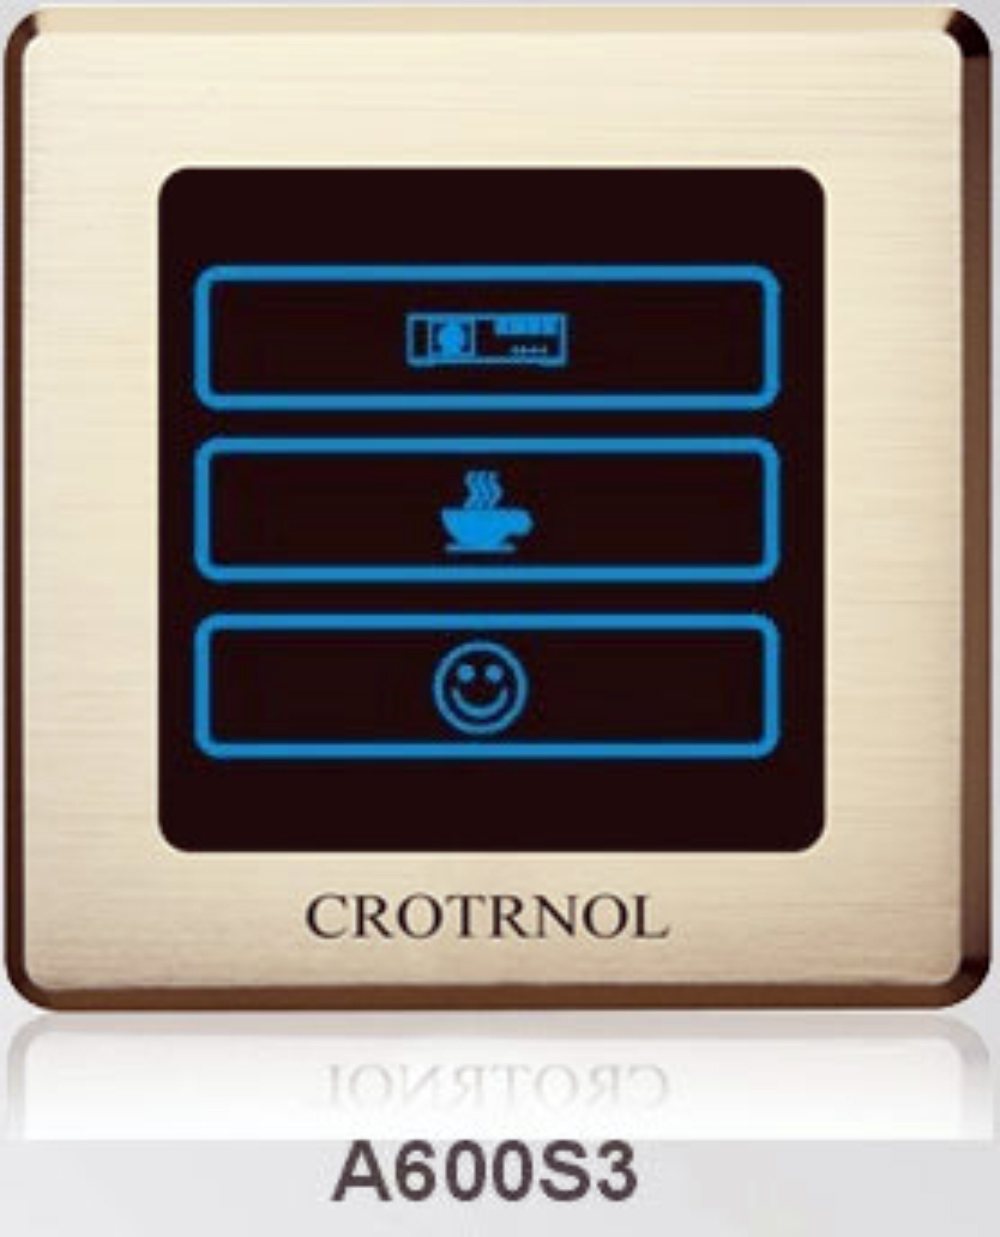 這就是Crotrnol面板